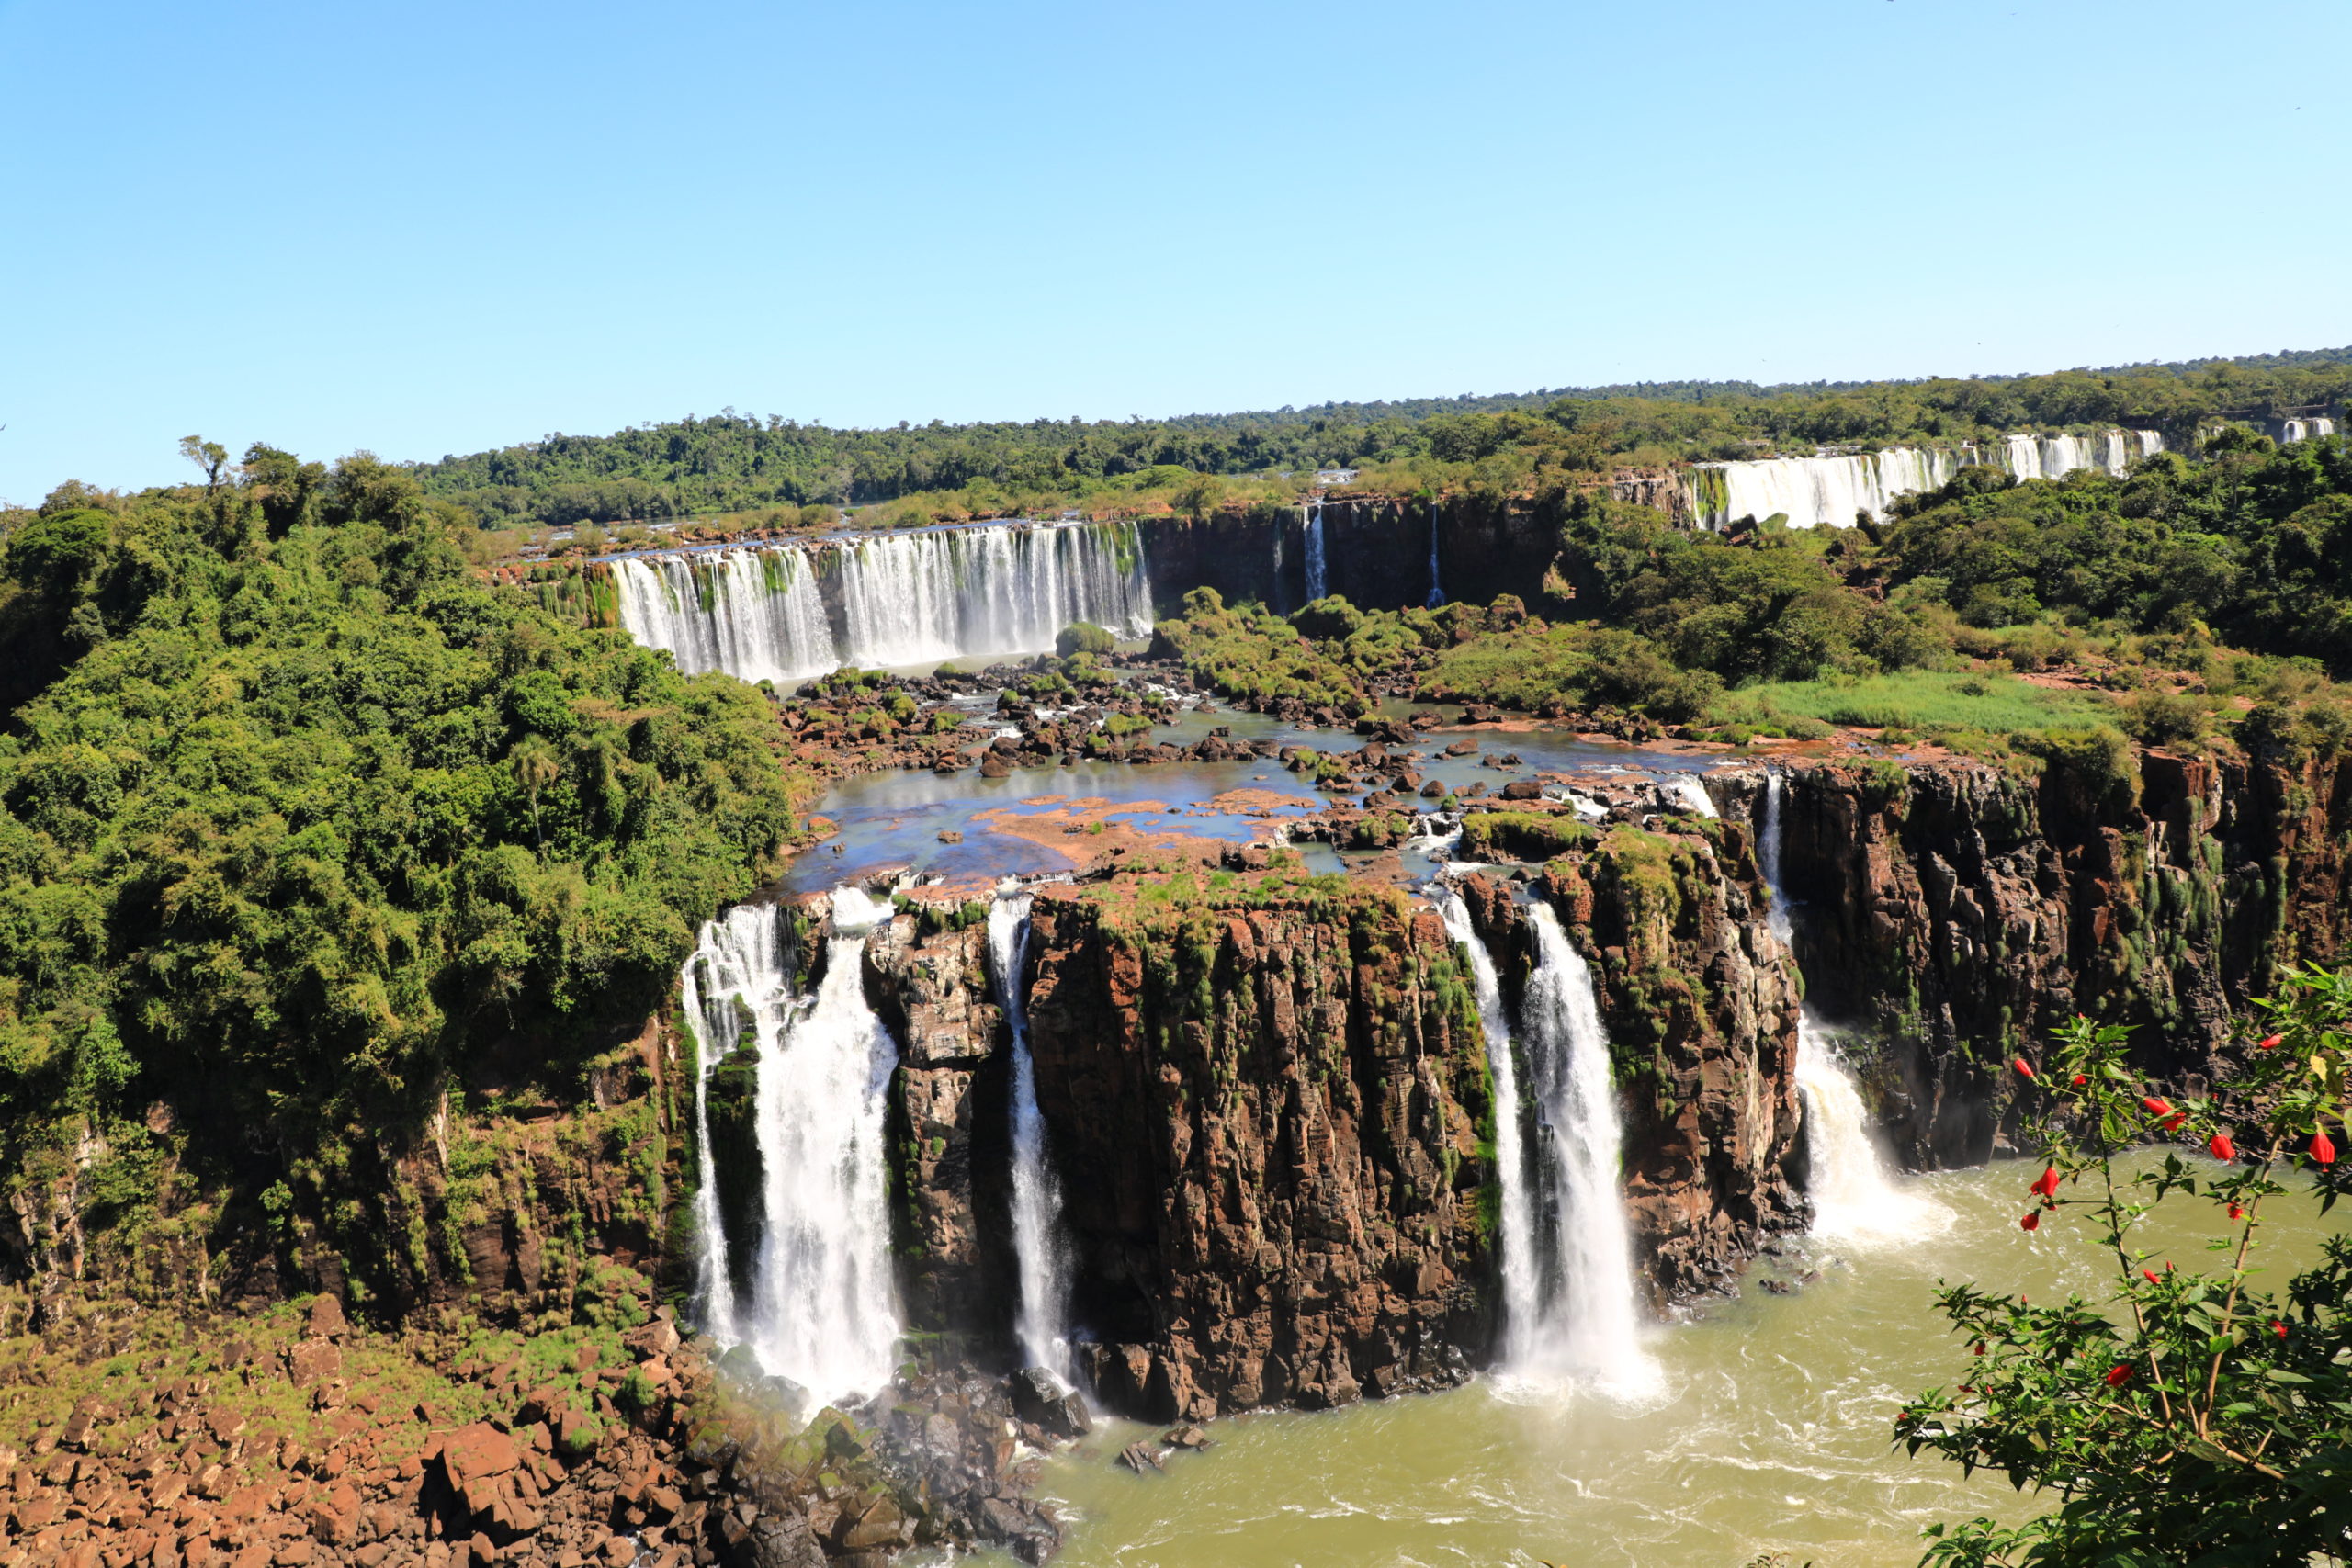 Chutes d'Iguaçu côté brésilien